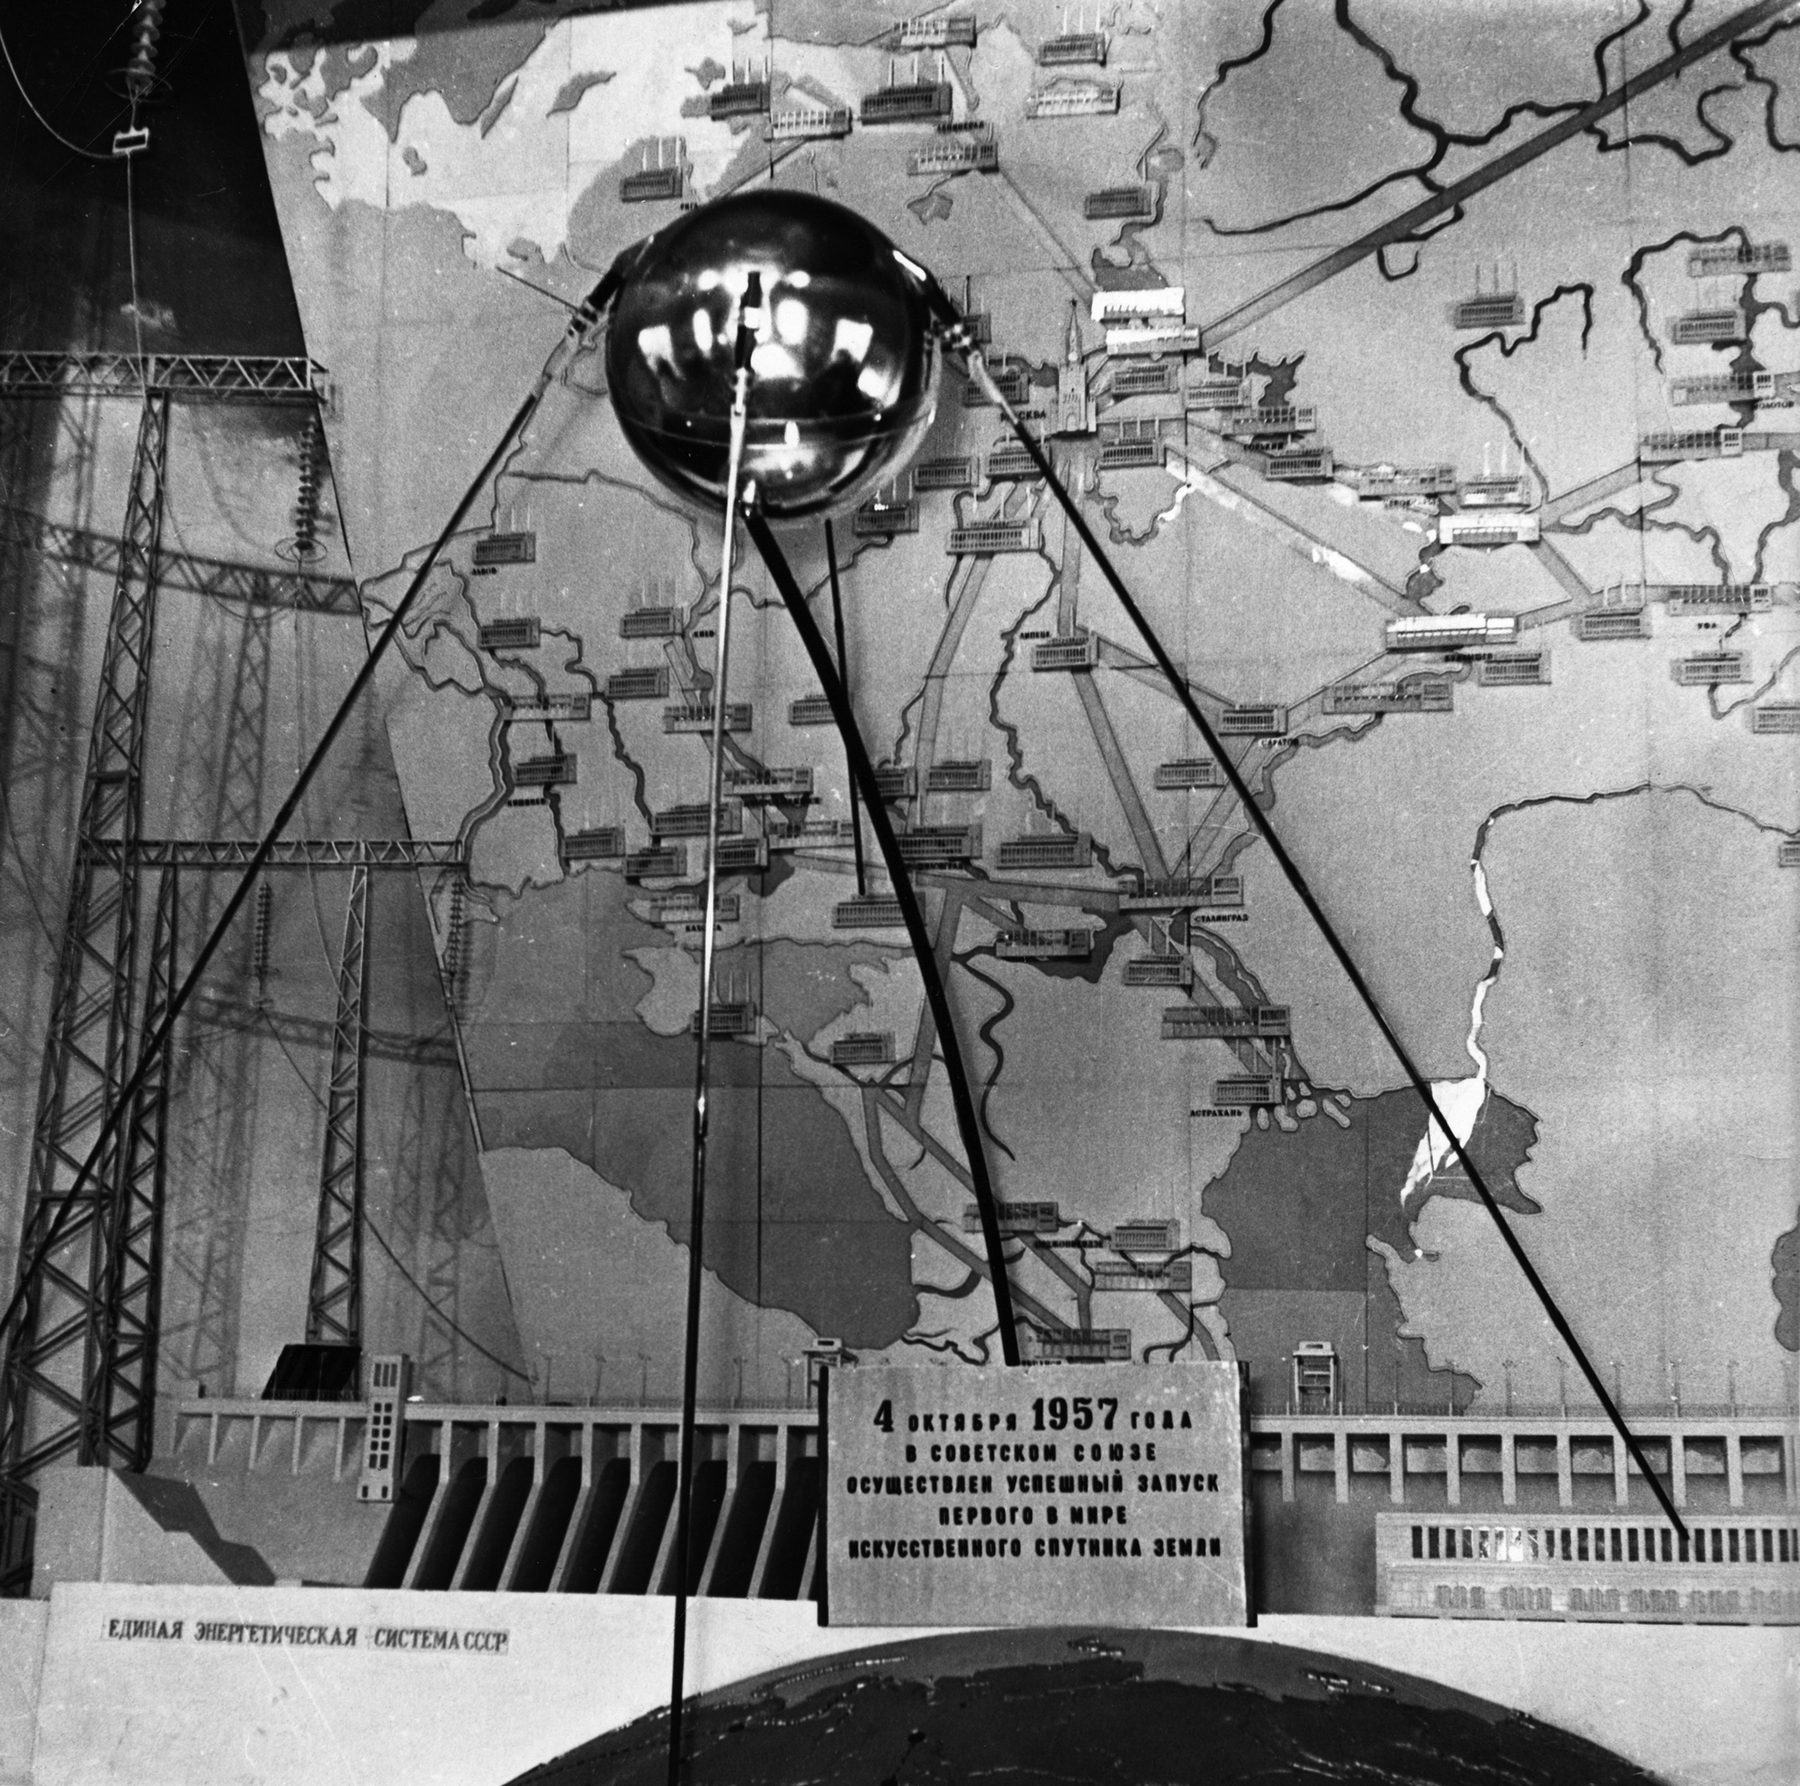 Fotografia em preto e branco. Um objeto em formato esférico e cor metálica está apoiado sobre três suportes de aço, exposto sobre uma mesa. Na parte inferior, um placa com texto escrito em russo, com o ano 1957 em destaque. Ao fundo, grande imagem com ilustração similar a um mapa.